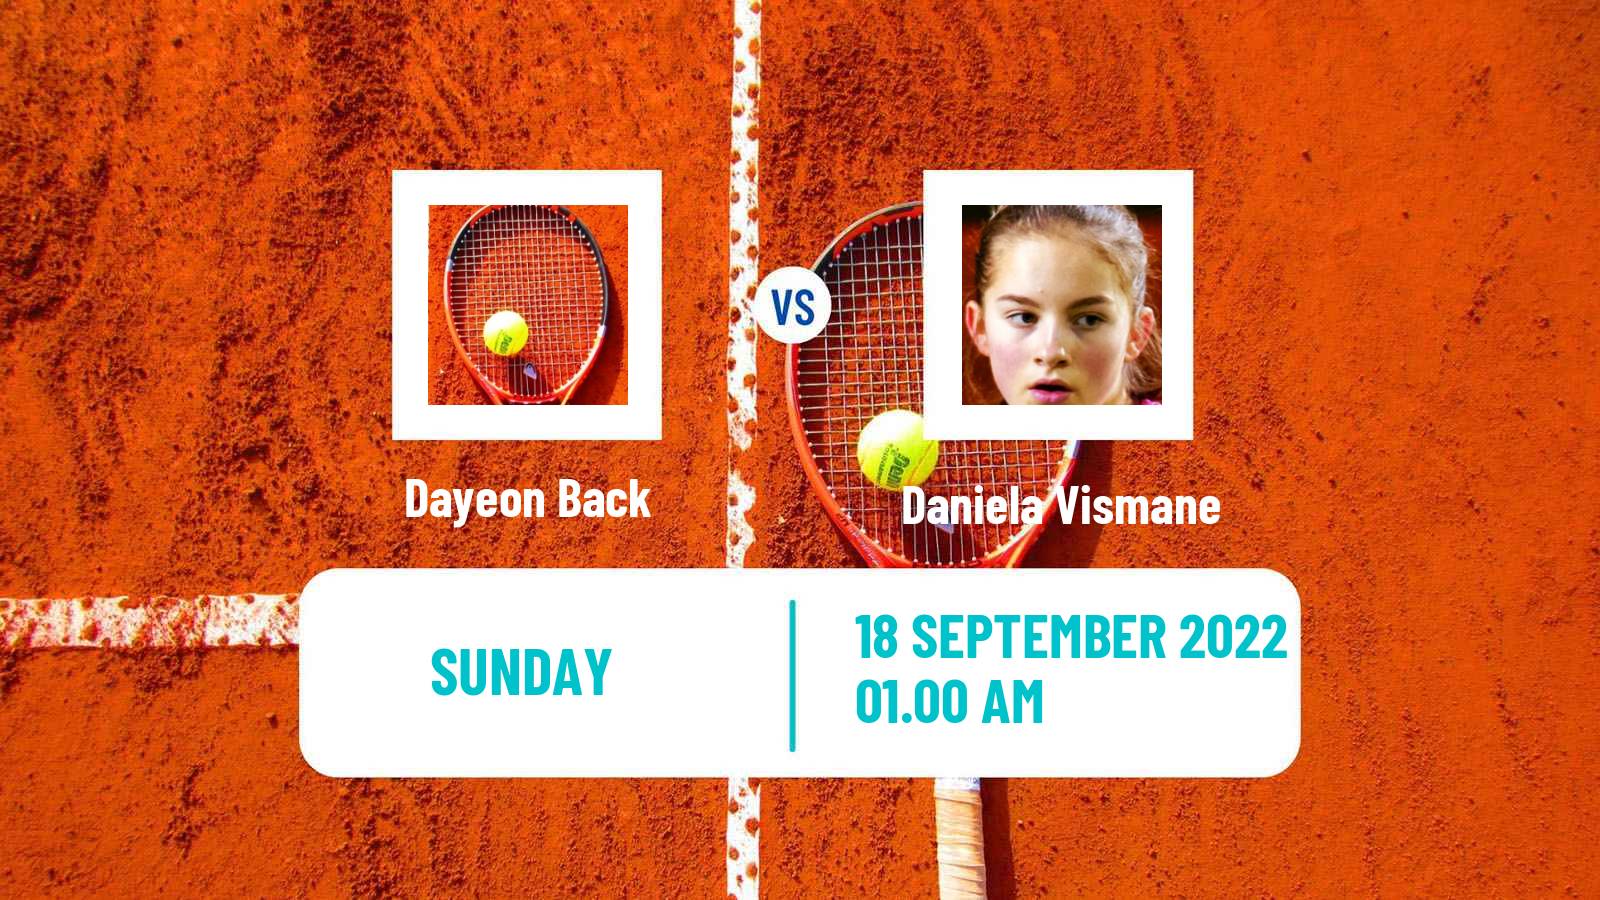 Tennis WTA Seoul Dayeon Back - Daniela Vismane